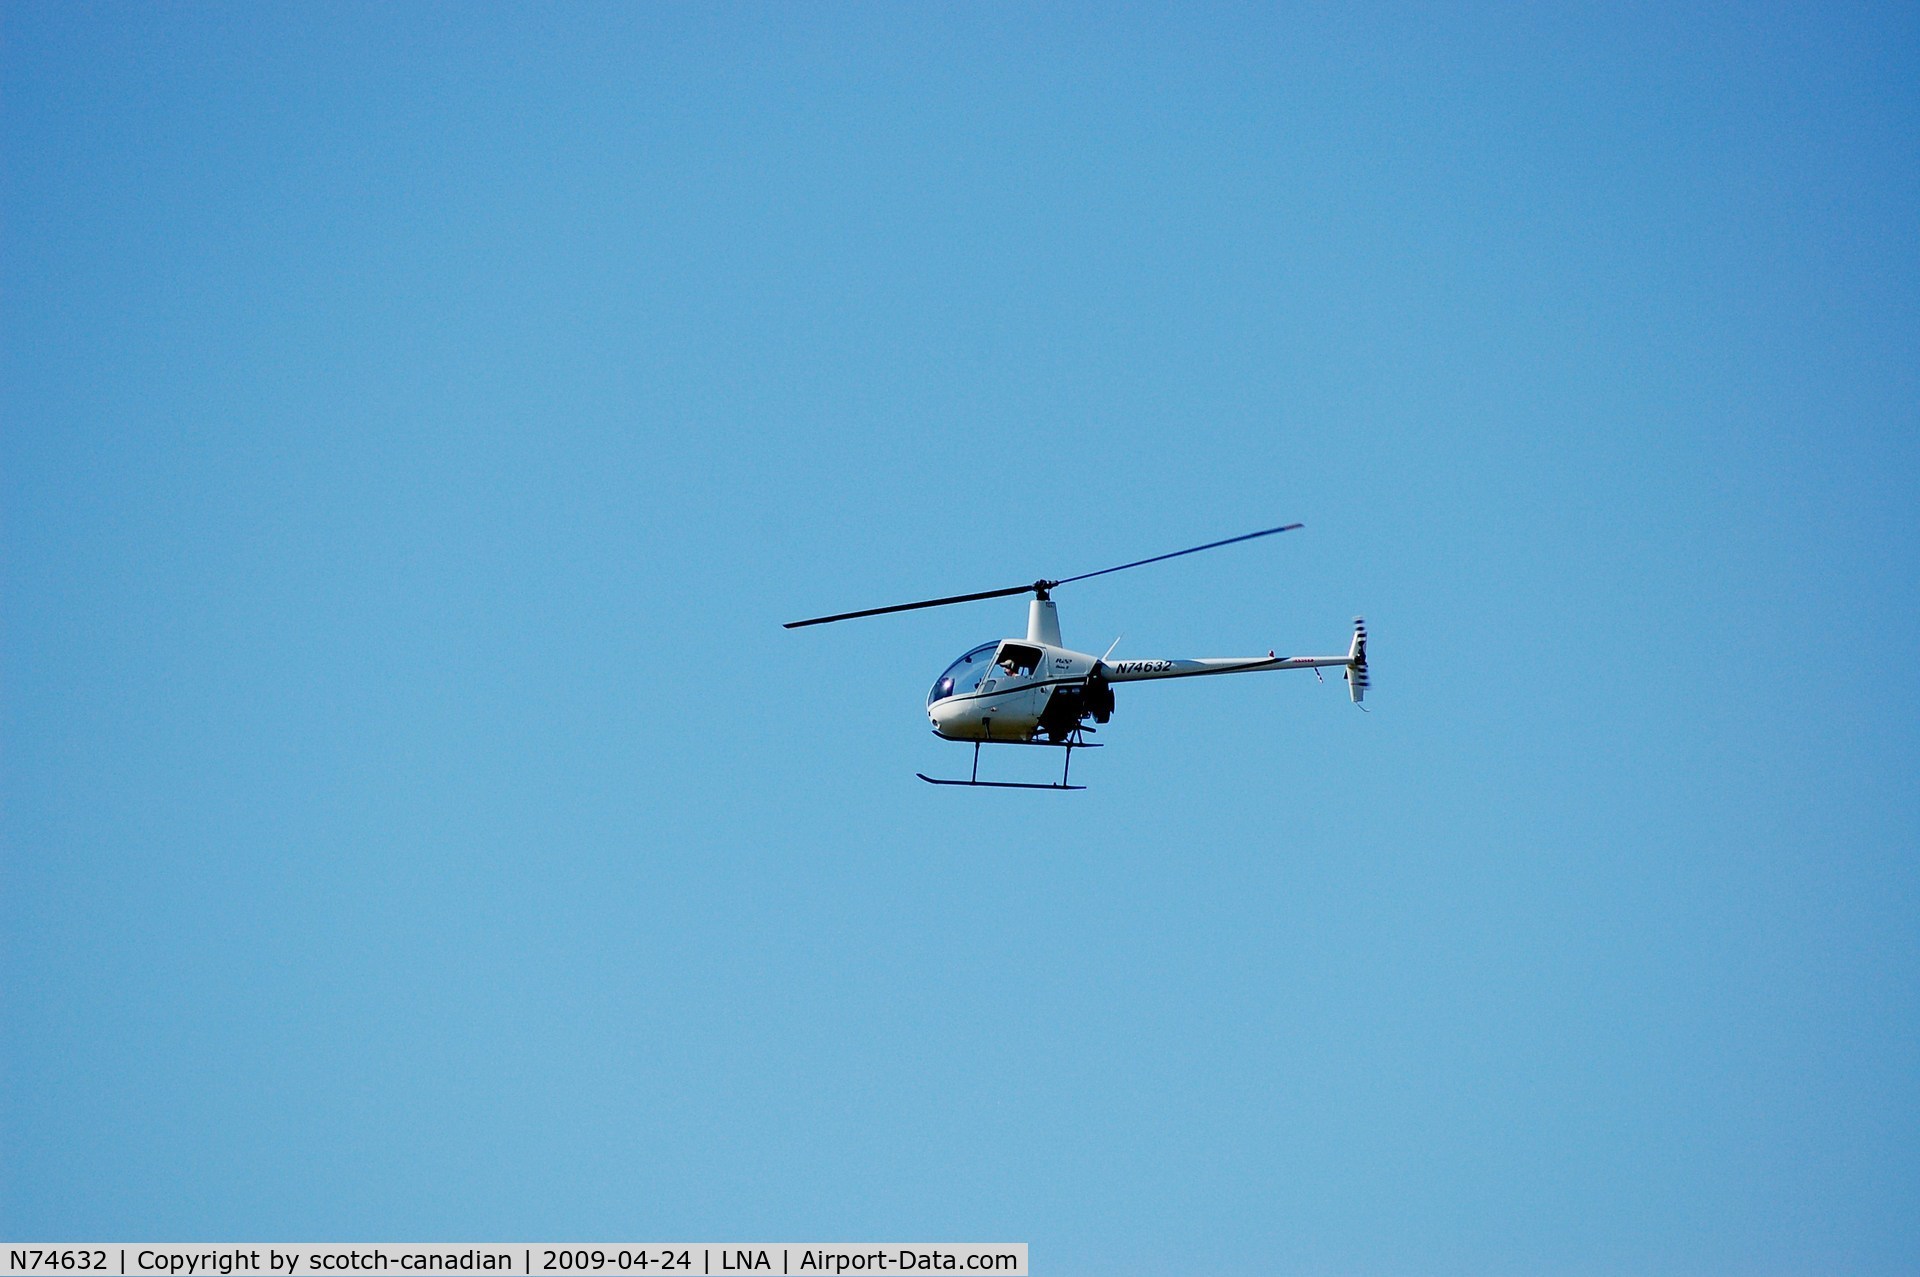 N74632, 2005 Robinson R22 Beta C/N 3963, 2005 Robinson Helicopter R22 BETA N74632 at Palm Beach County Park Airport, Lantana, FL